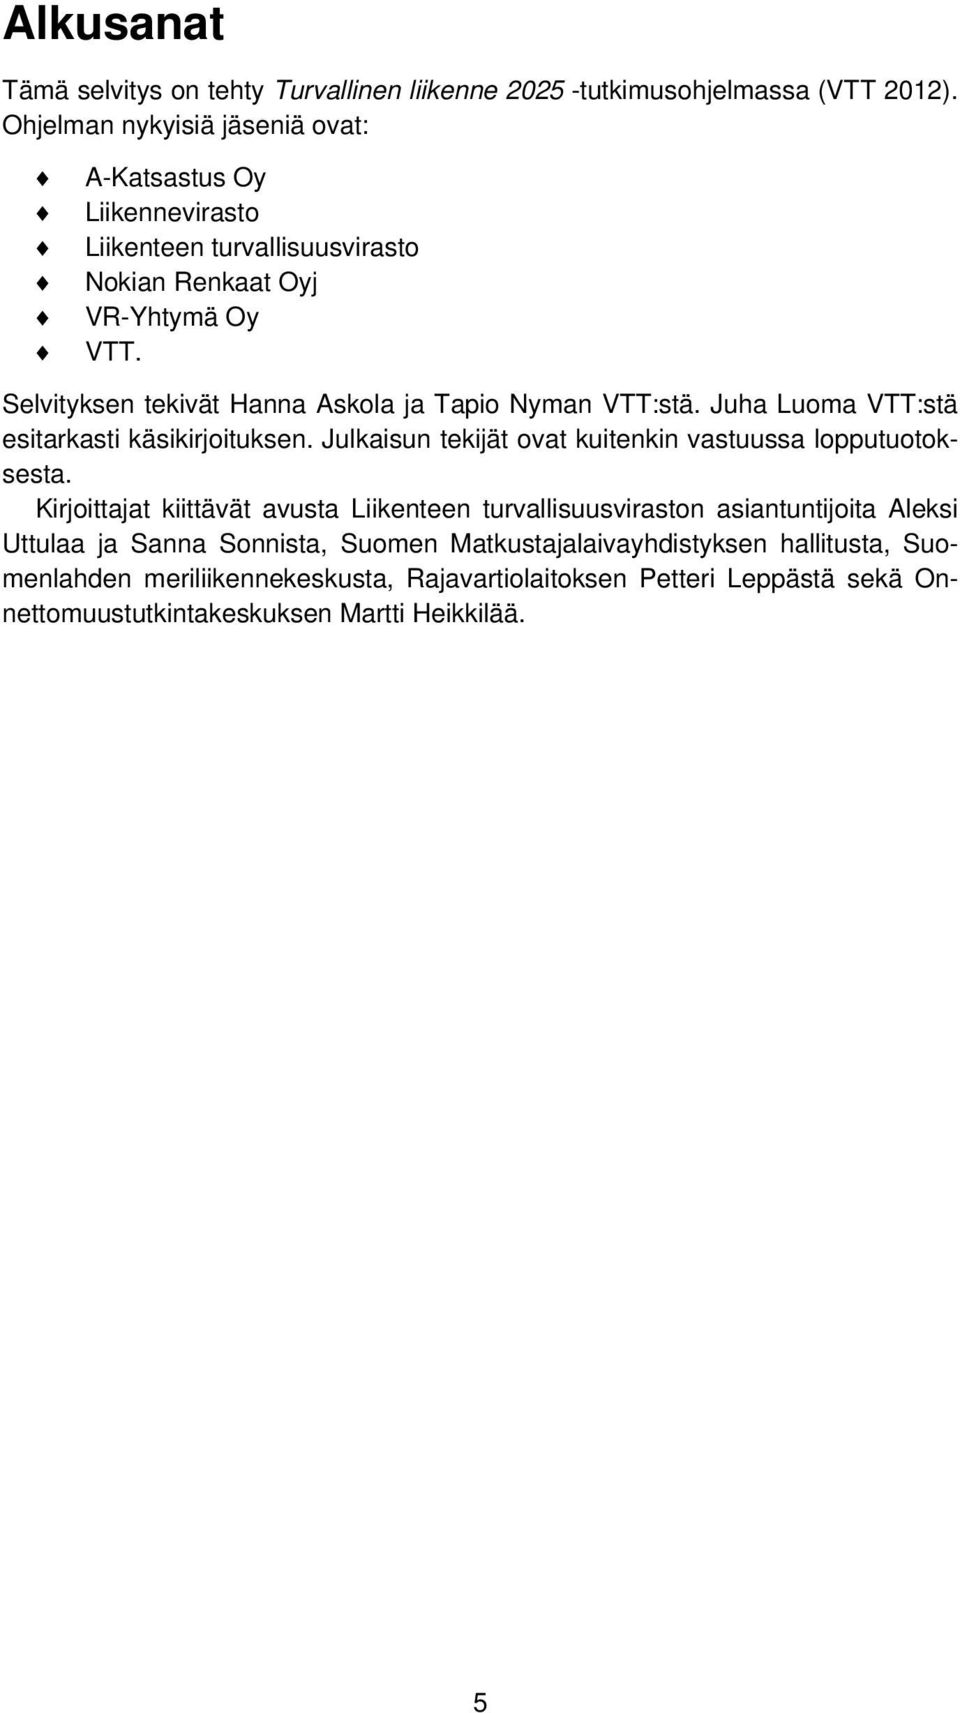 Selvityksen tekivät Hanna Askola ja Tapio Nyman VTT:stä. Juha Luoma VTT:stä esitarkasti käsikirjoituksen. Julkaisun tekijät ovat kuitenkin vastuussa lopputuotoksesta.